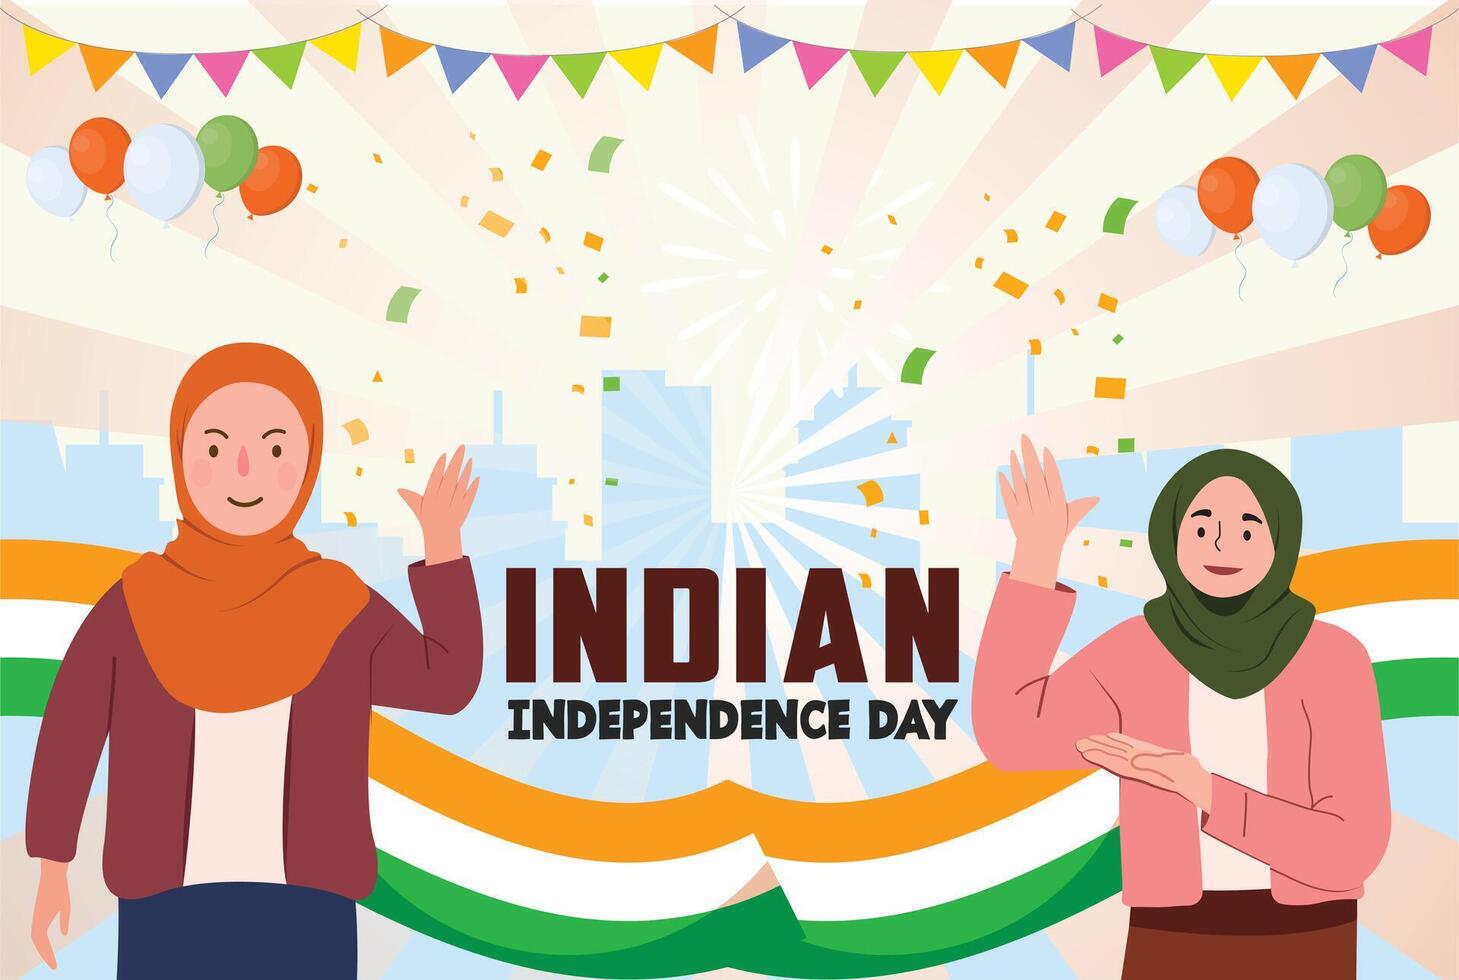 indiano indipendenza celebrazioni giorno illustrazione vettore bandiera e inviare disegno, celebrazioni giorno clip arte impostare. India nazionale bandiera la libertà indipendenza patriottismo modello.